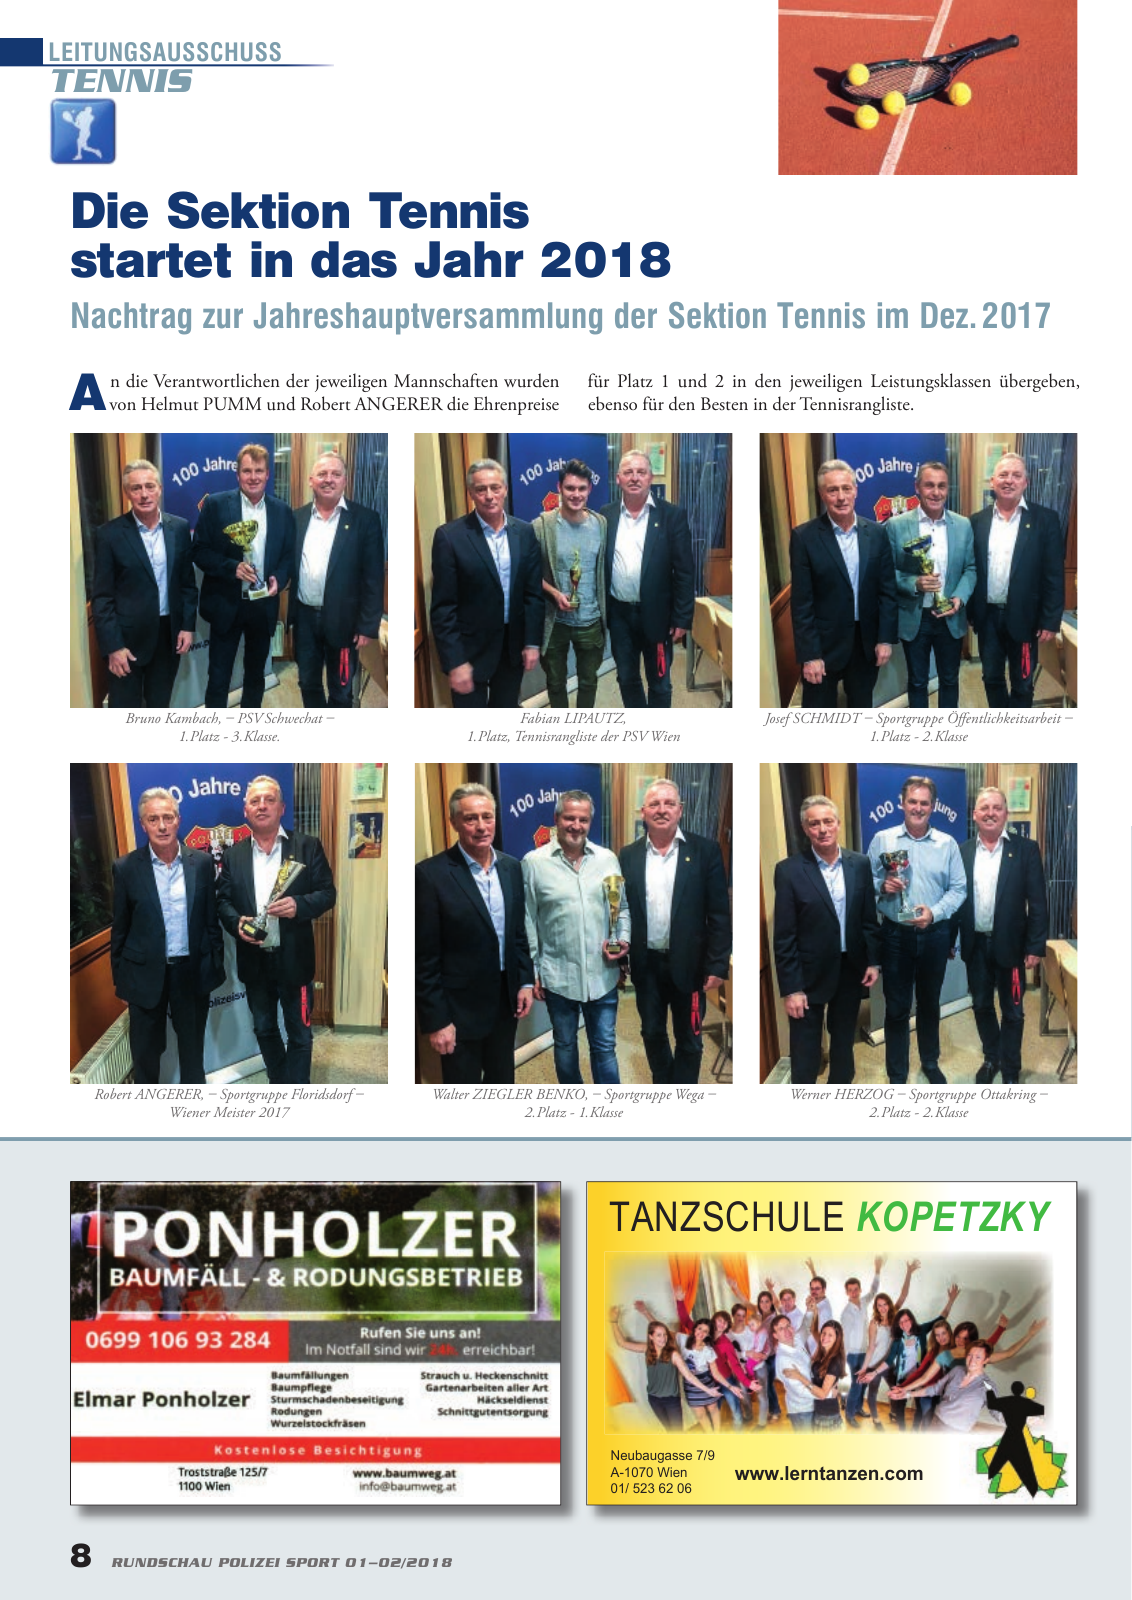 Vorschau Rundschau Polizei Sport 01-02/2018 Seite 8